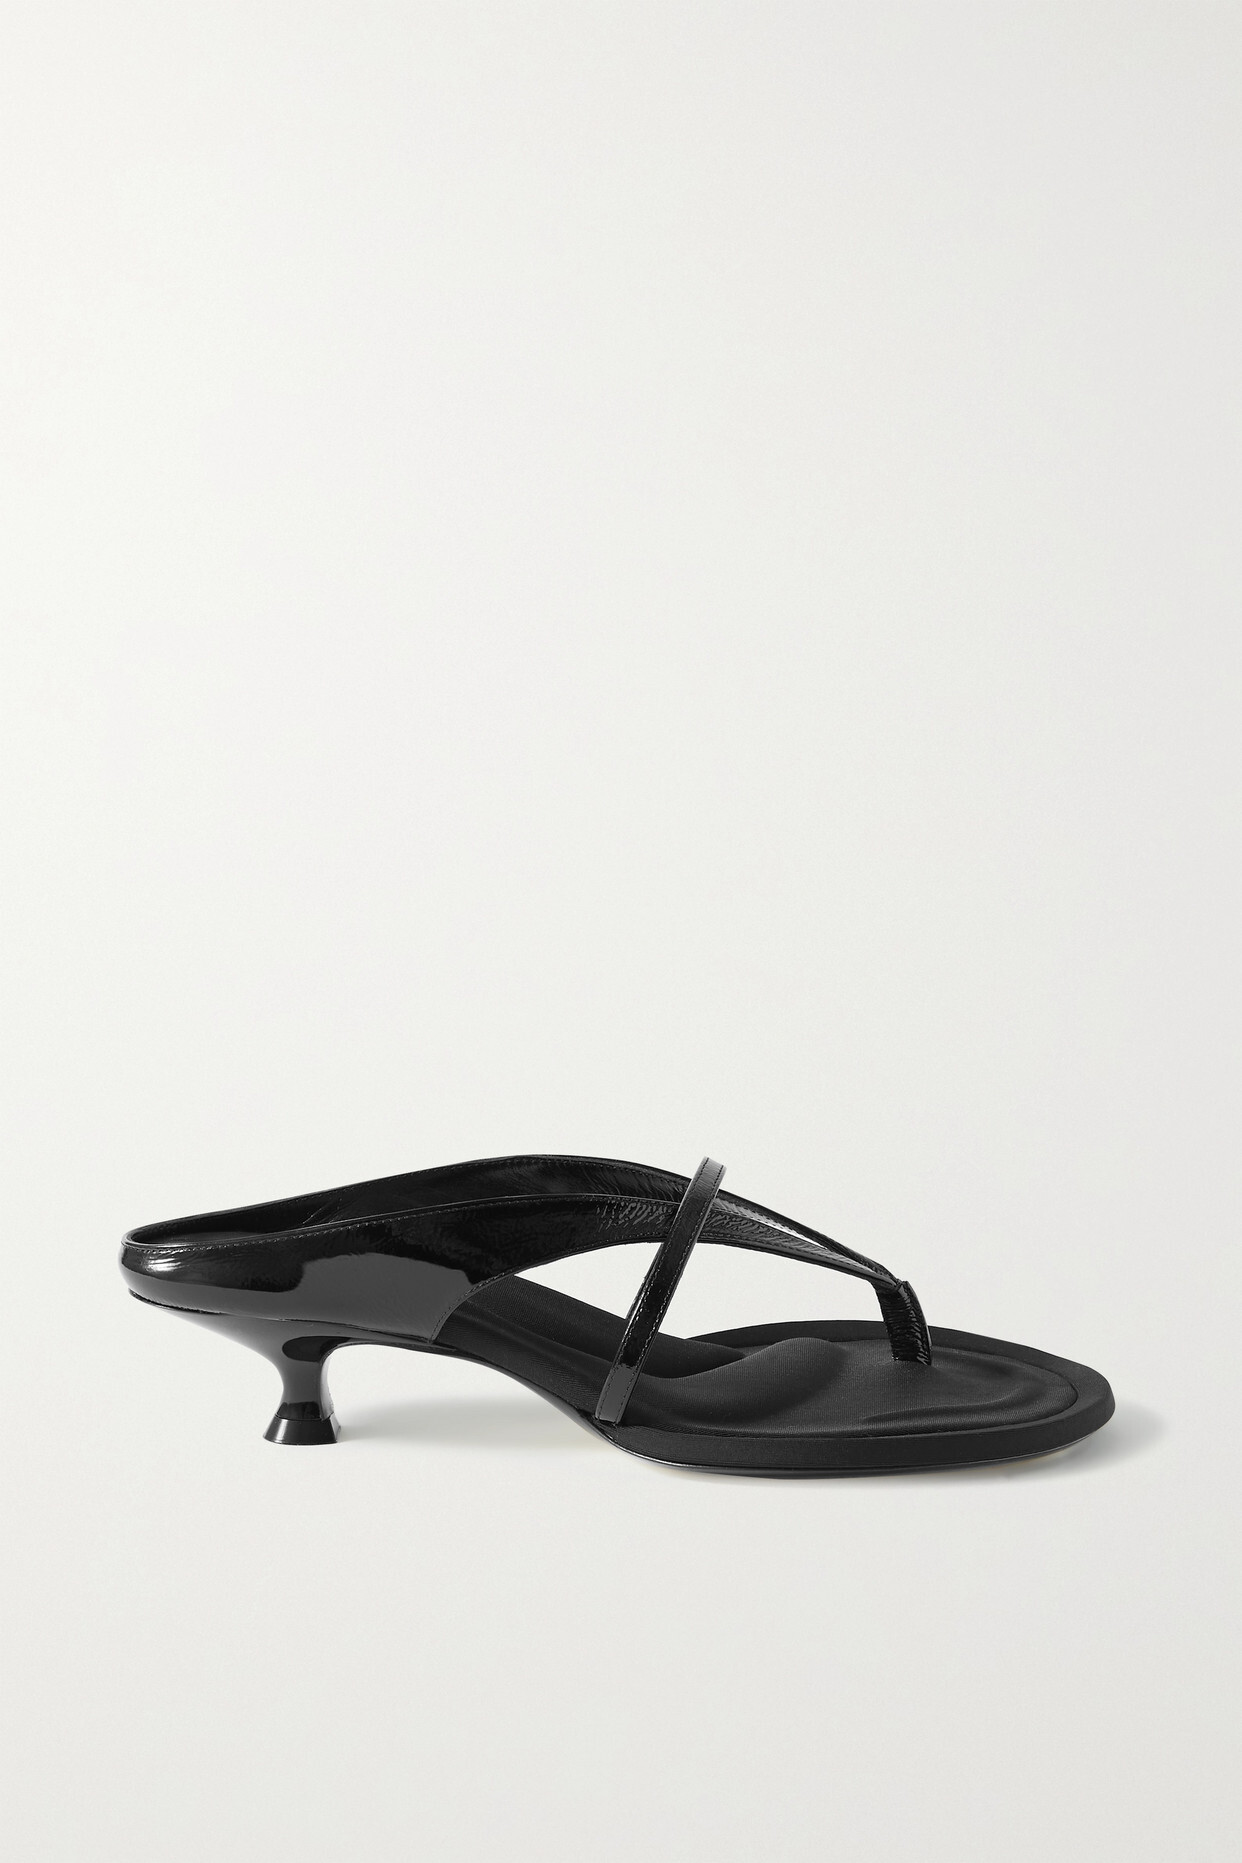 Khaite - Monroe Crinkled Patent-leather Sandals - Black